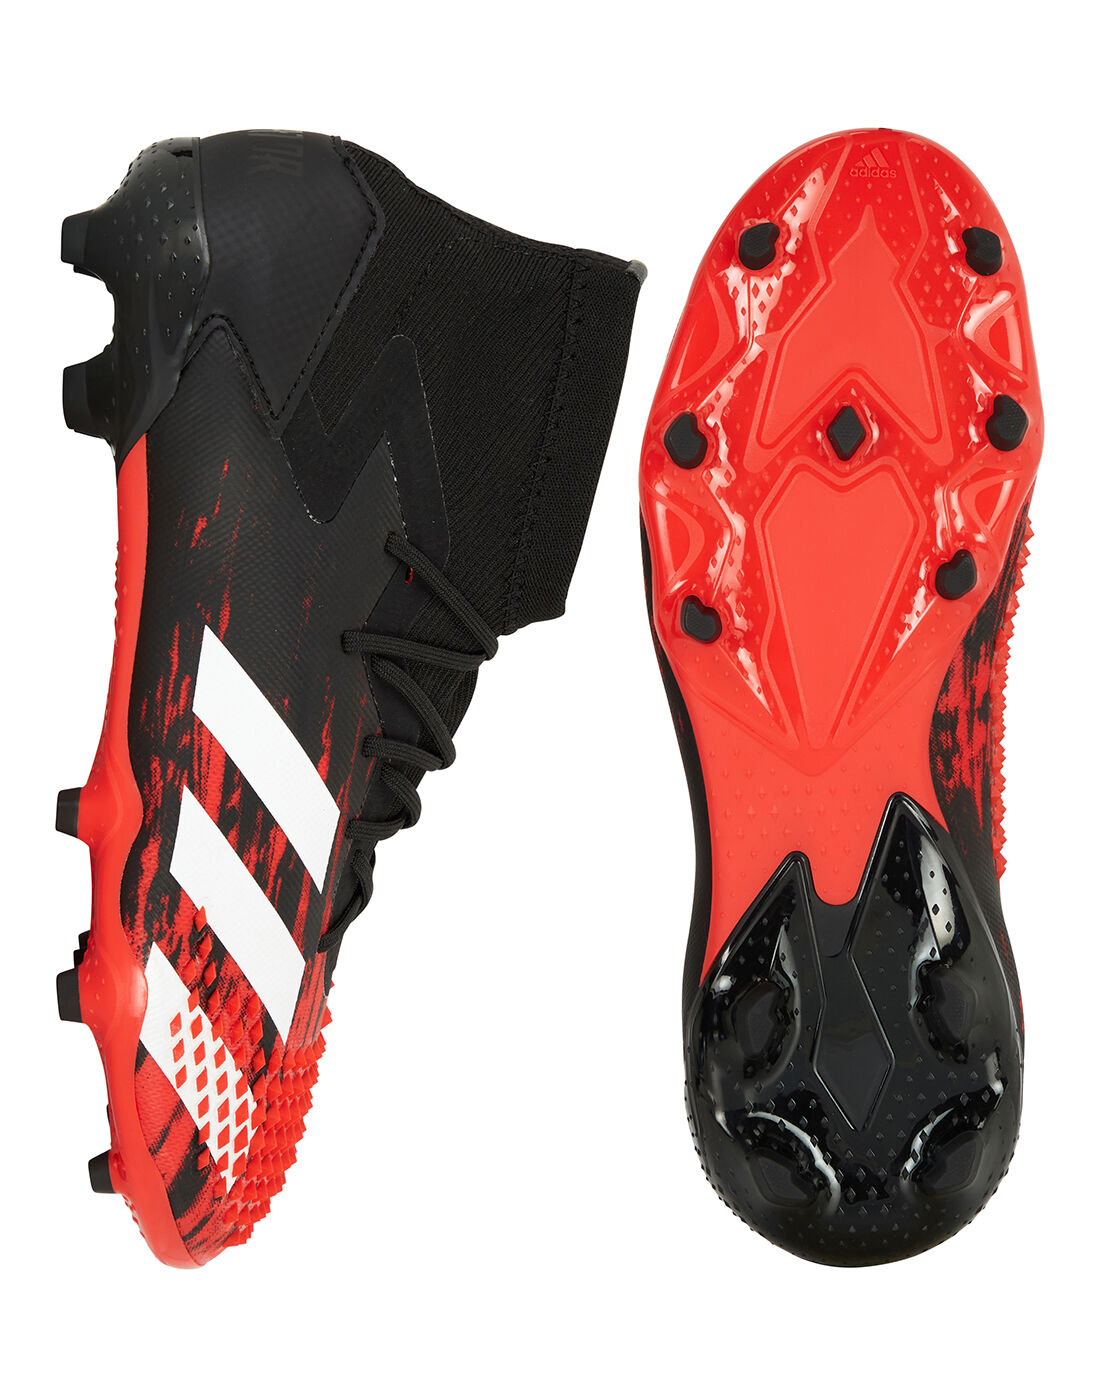 adidas Predator Shoes for Boys for sale eBay